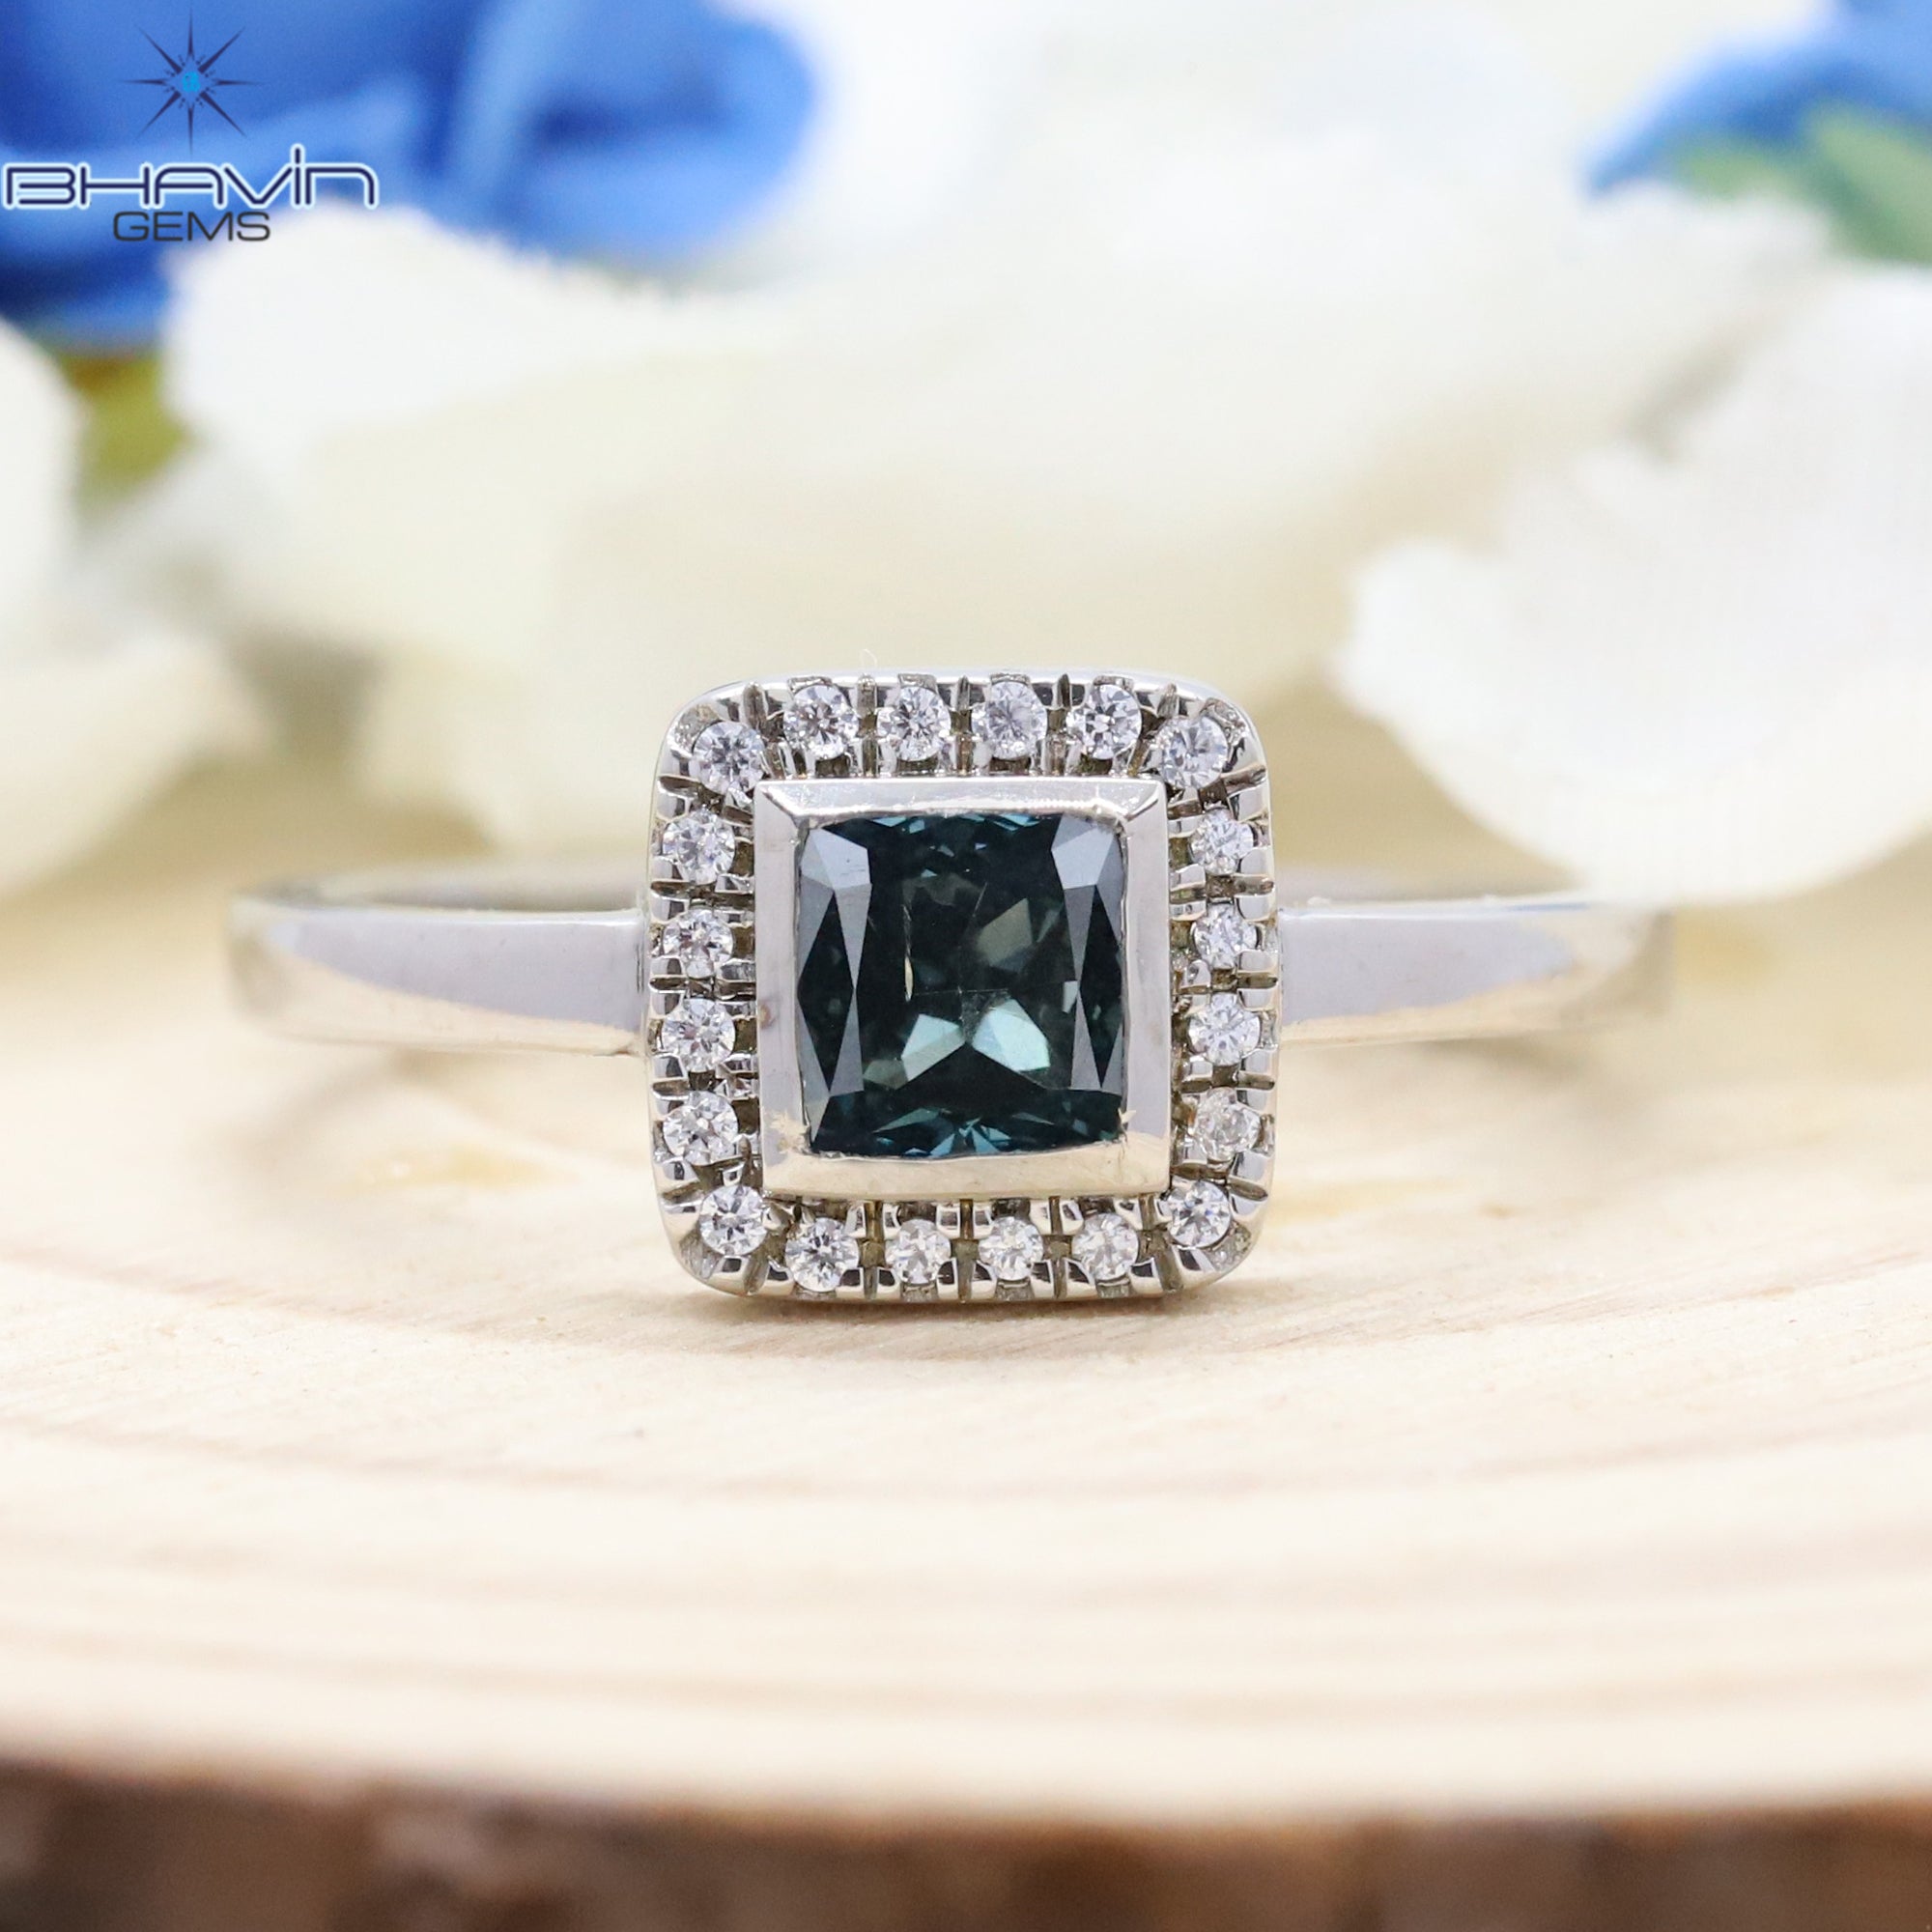 ヘキサゴン ダイヤモンド, ソルト アンド ペッパー ダイヤモンド, 天然ダイヤモンド リング, 婚約指輪